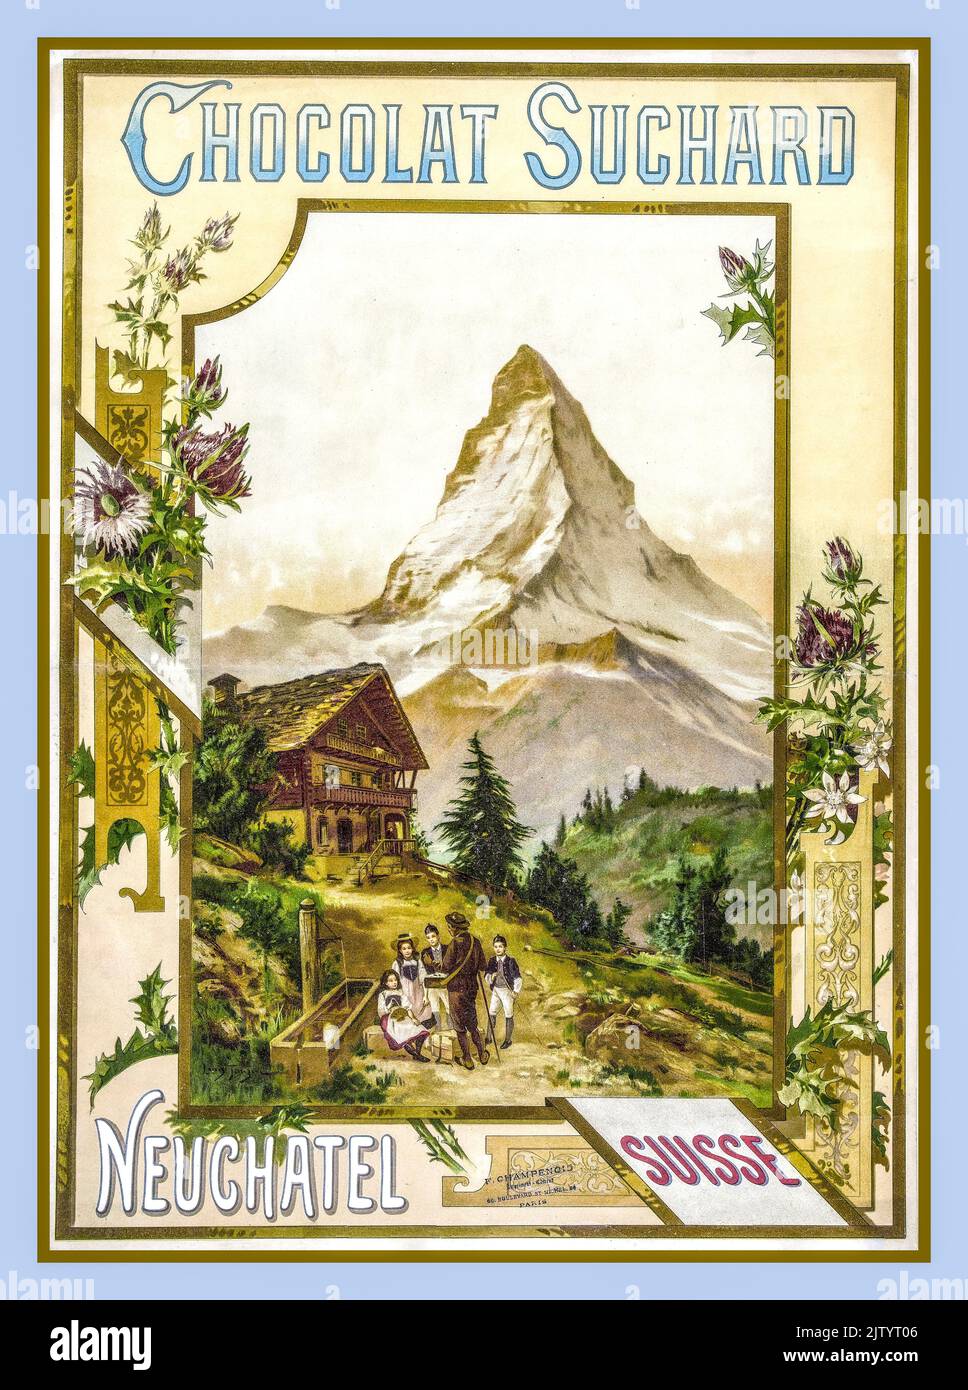 SUCHARD Vintage Swiss Chocolat Chocolate 1900s affiche publicitaire pour SUCHARD Neuchâtel Suisse Alpes suisses Matterhorn affiche publicitaire pour la compagnie chocolat Suchard, avec le Cervin en arrière plan de l'artiste Louis Tauzin vers 1900 Banque D'Images